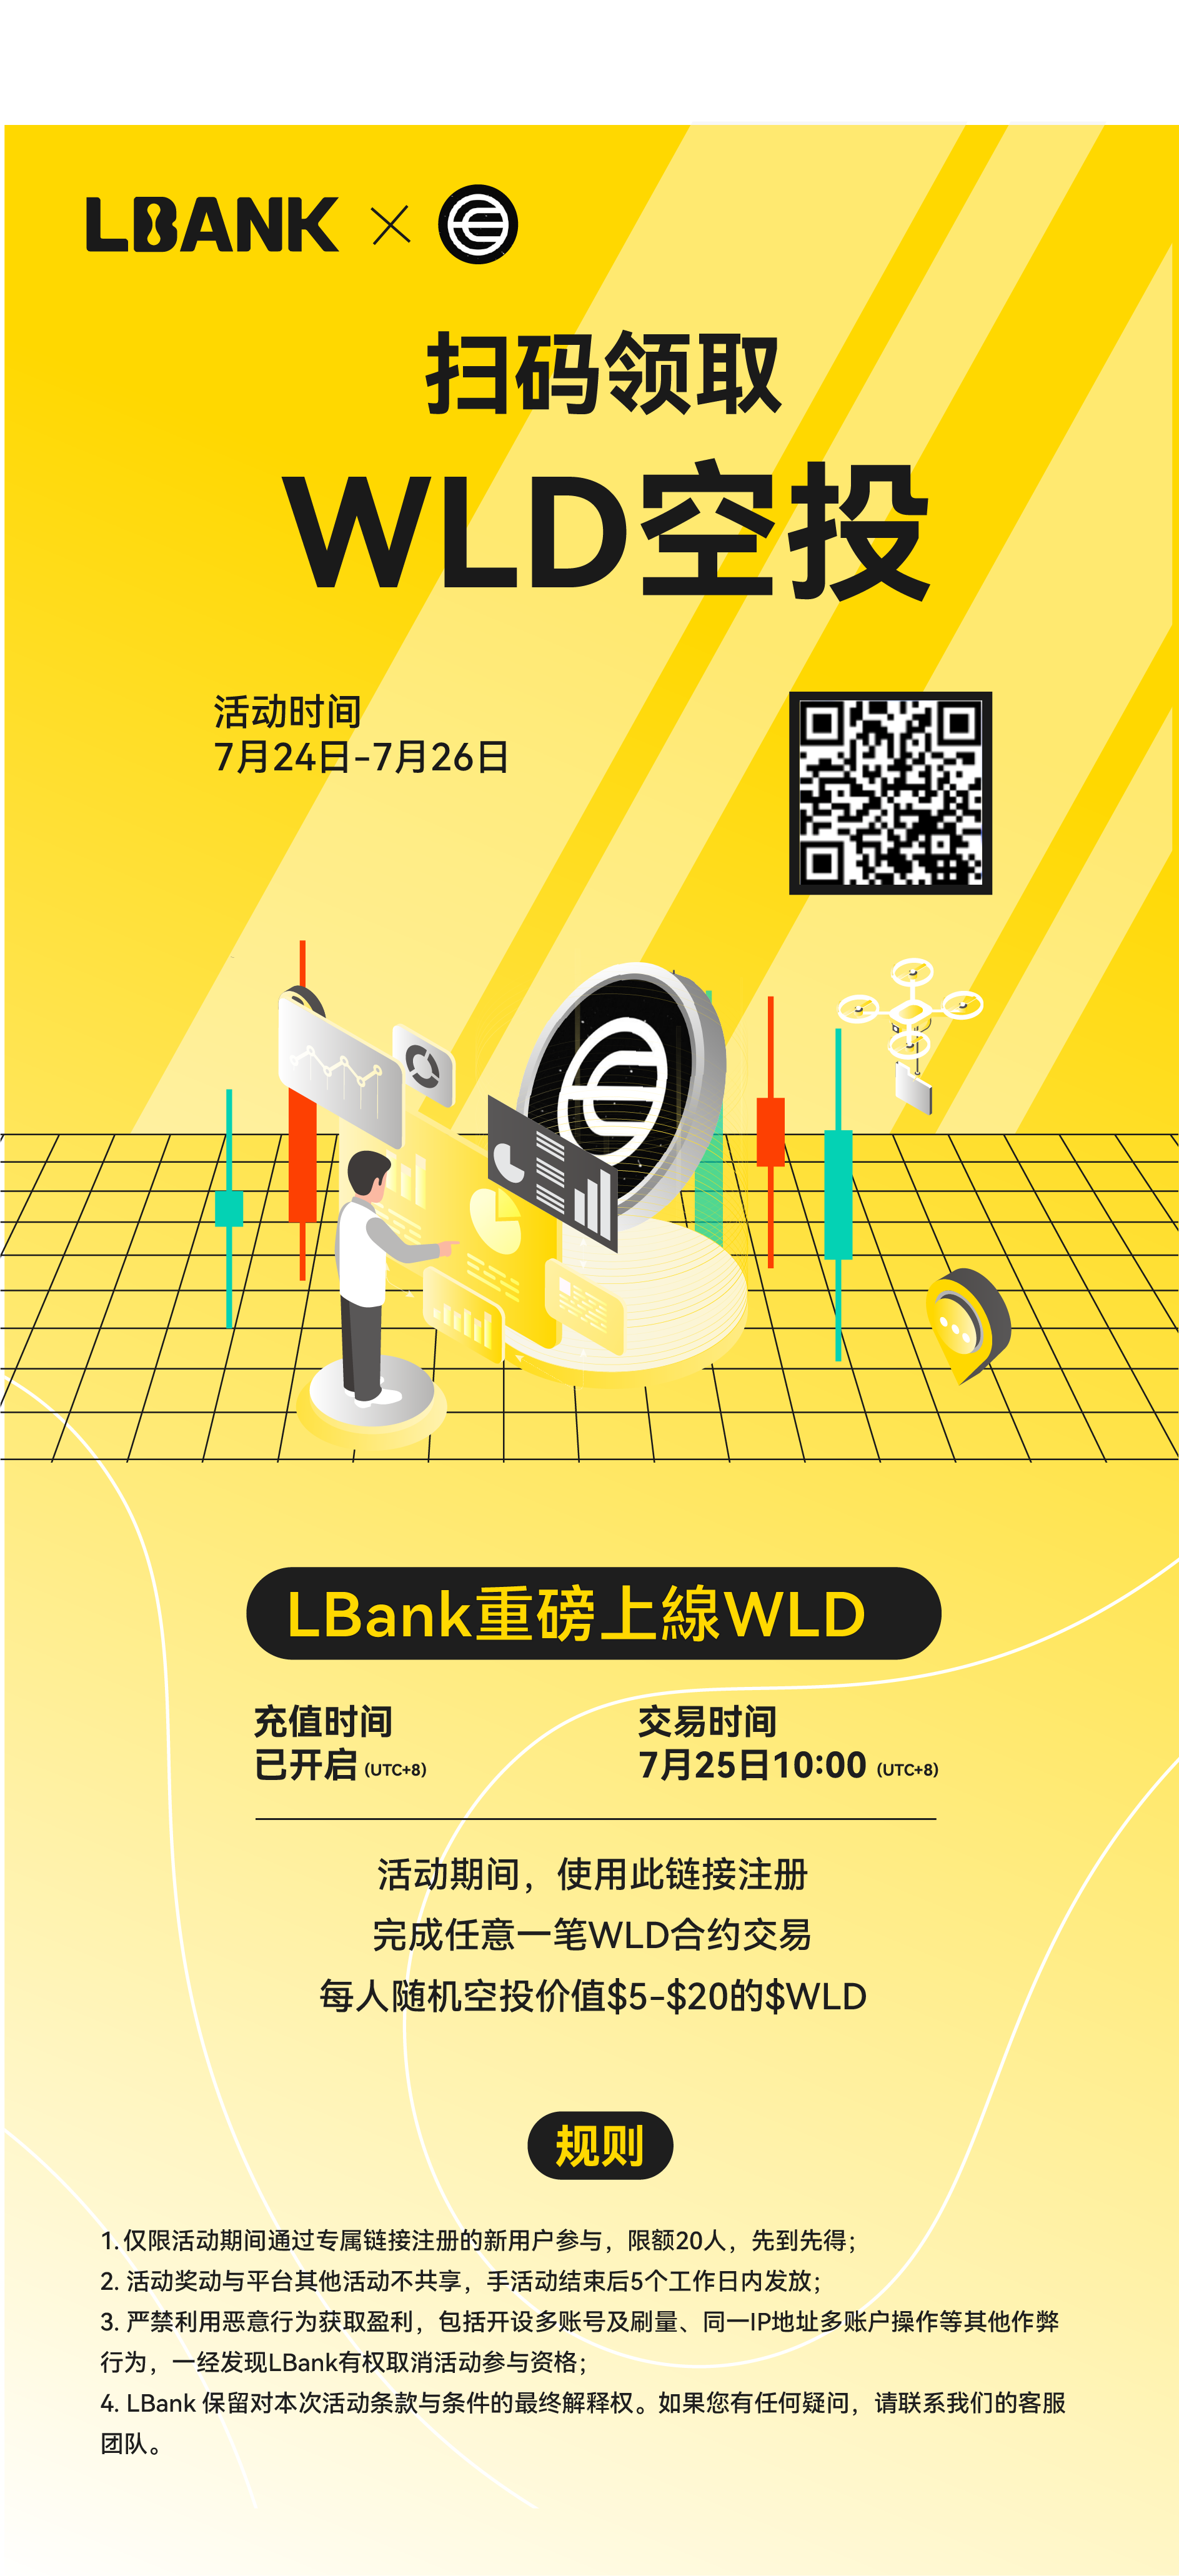 LBank首发上线WLD  扫码注册领取空投福利